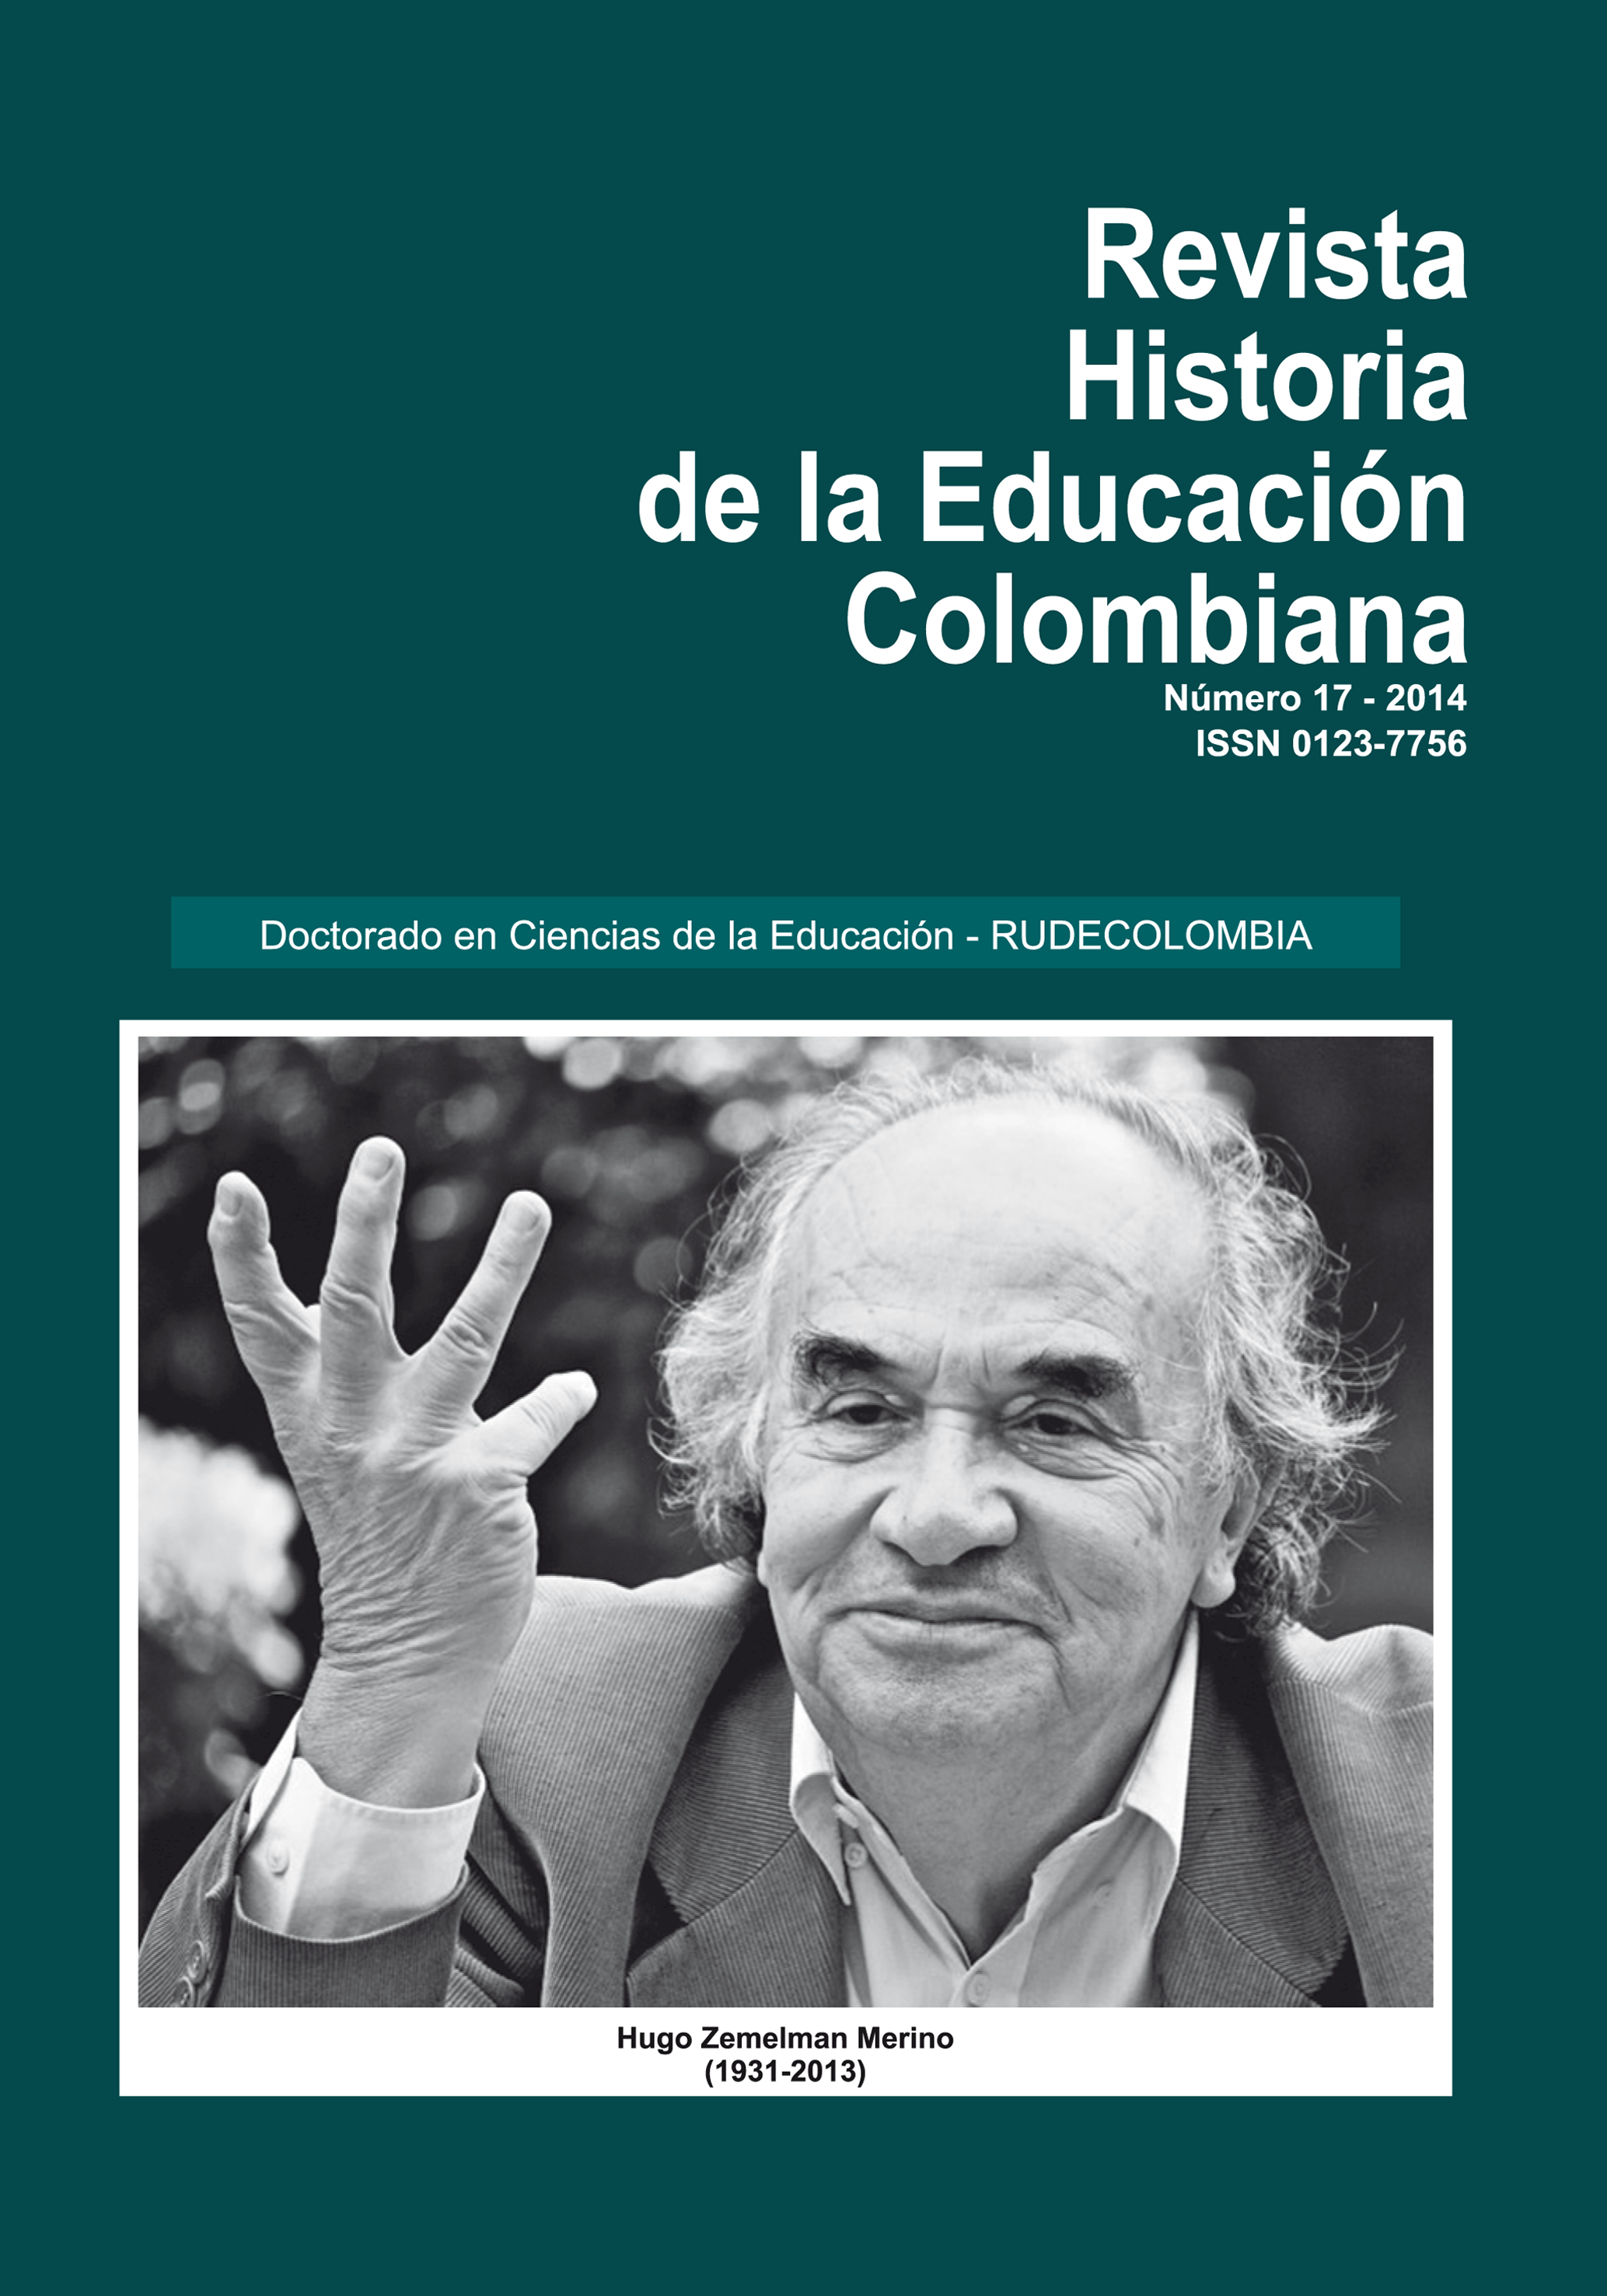 					Ver Vol. 17 Núm. 17 (2014): Revista Historia de la Educación Colombiana
				